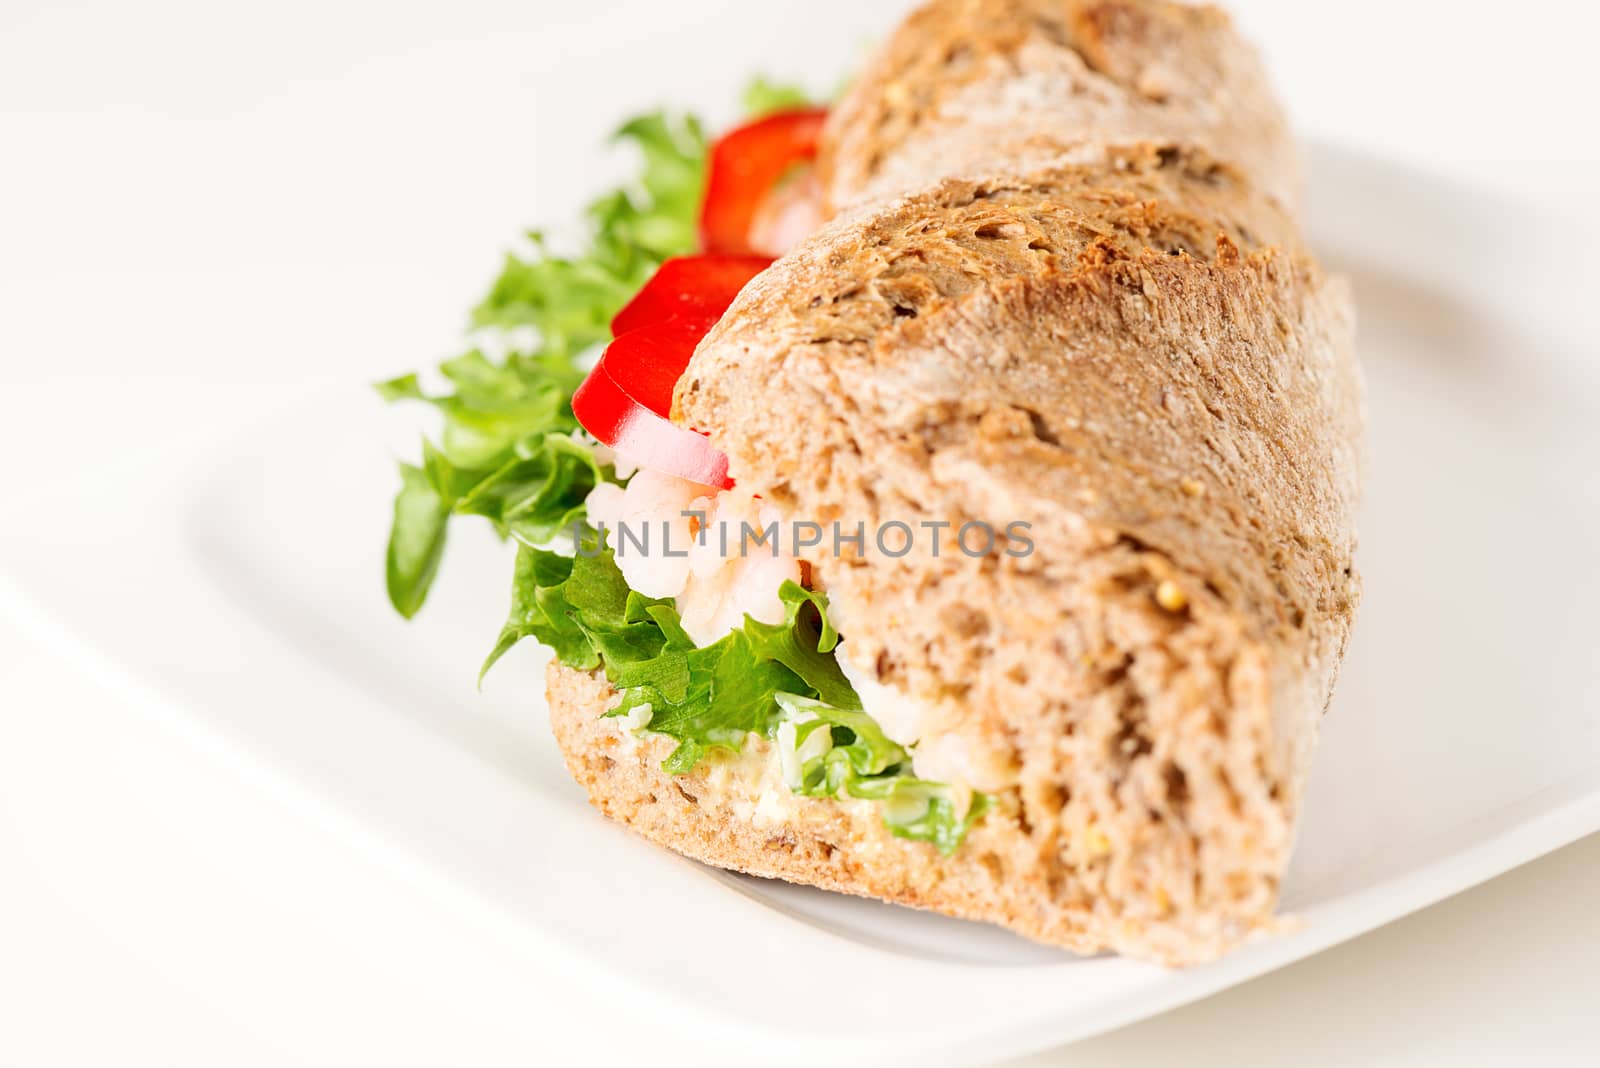 Prawn sandwich on white plate close up by Nanisimova